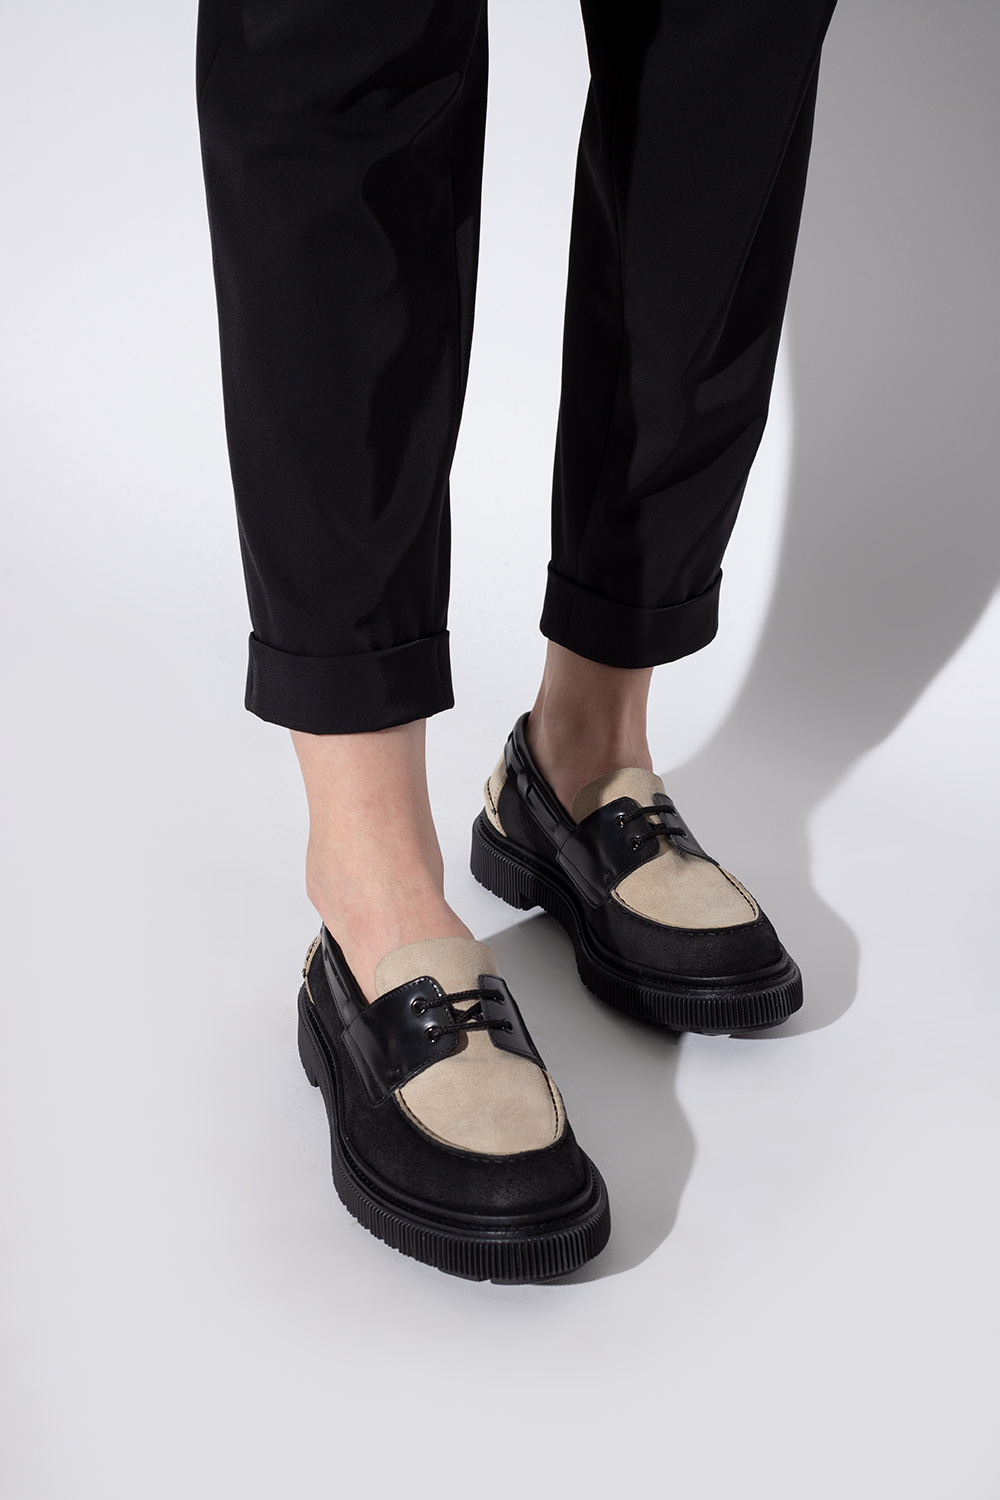 Women's Shoes | IetpShops | Adieu Paris 'Type 174' leather shoes